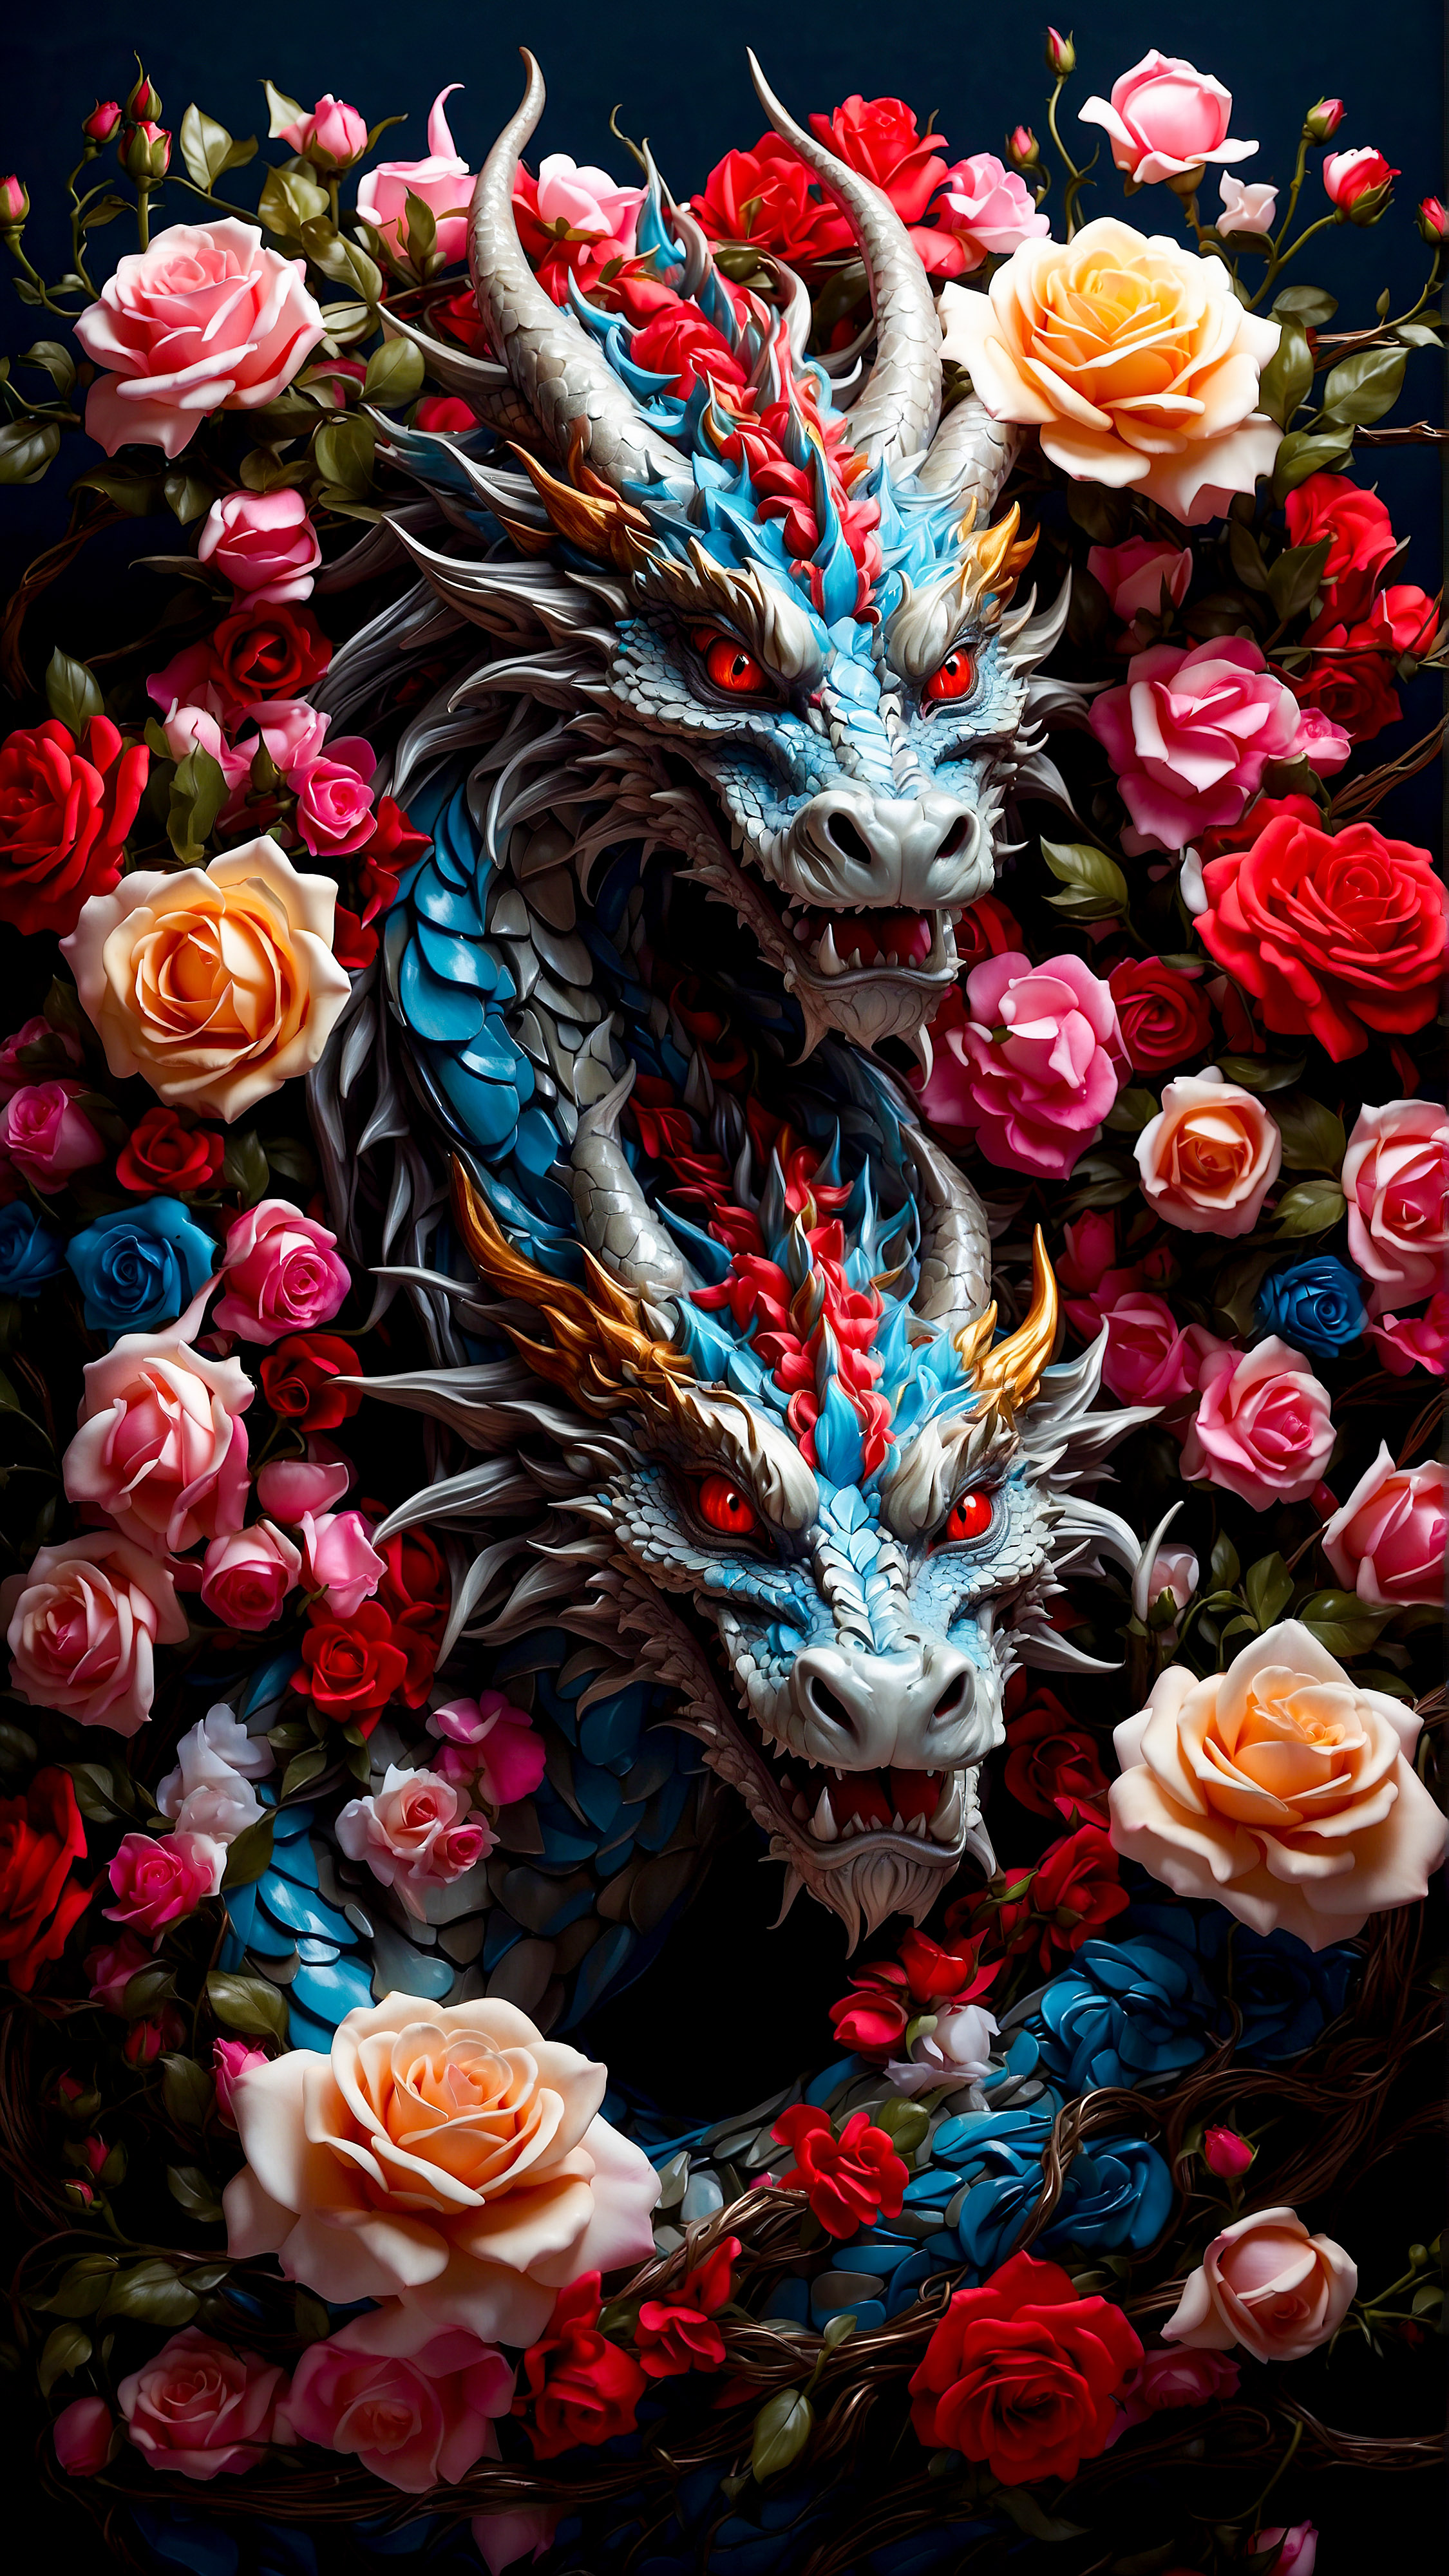 Vivez la puissance de l'esthétique avec notre fond d'écran de verrouillage pour iPhone, présentant une illustration vibrante et colorée d'un dragon entrelacé avec de belles roses contre un fond sombre. 